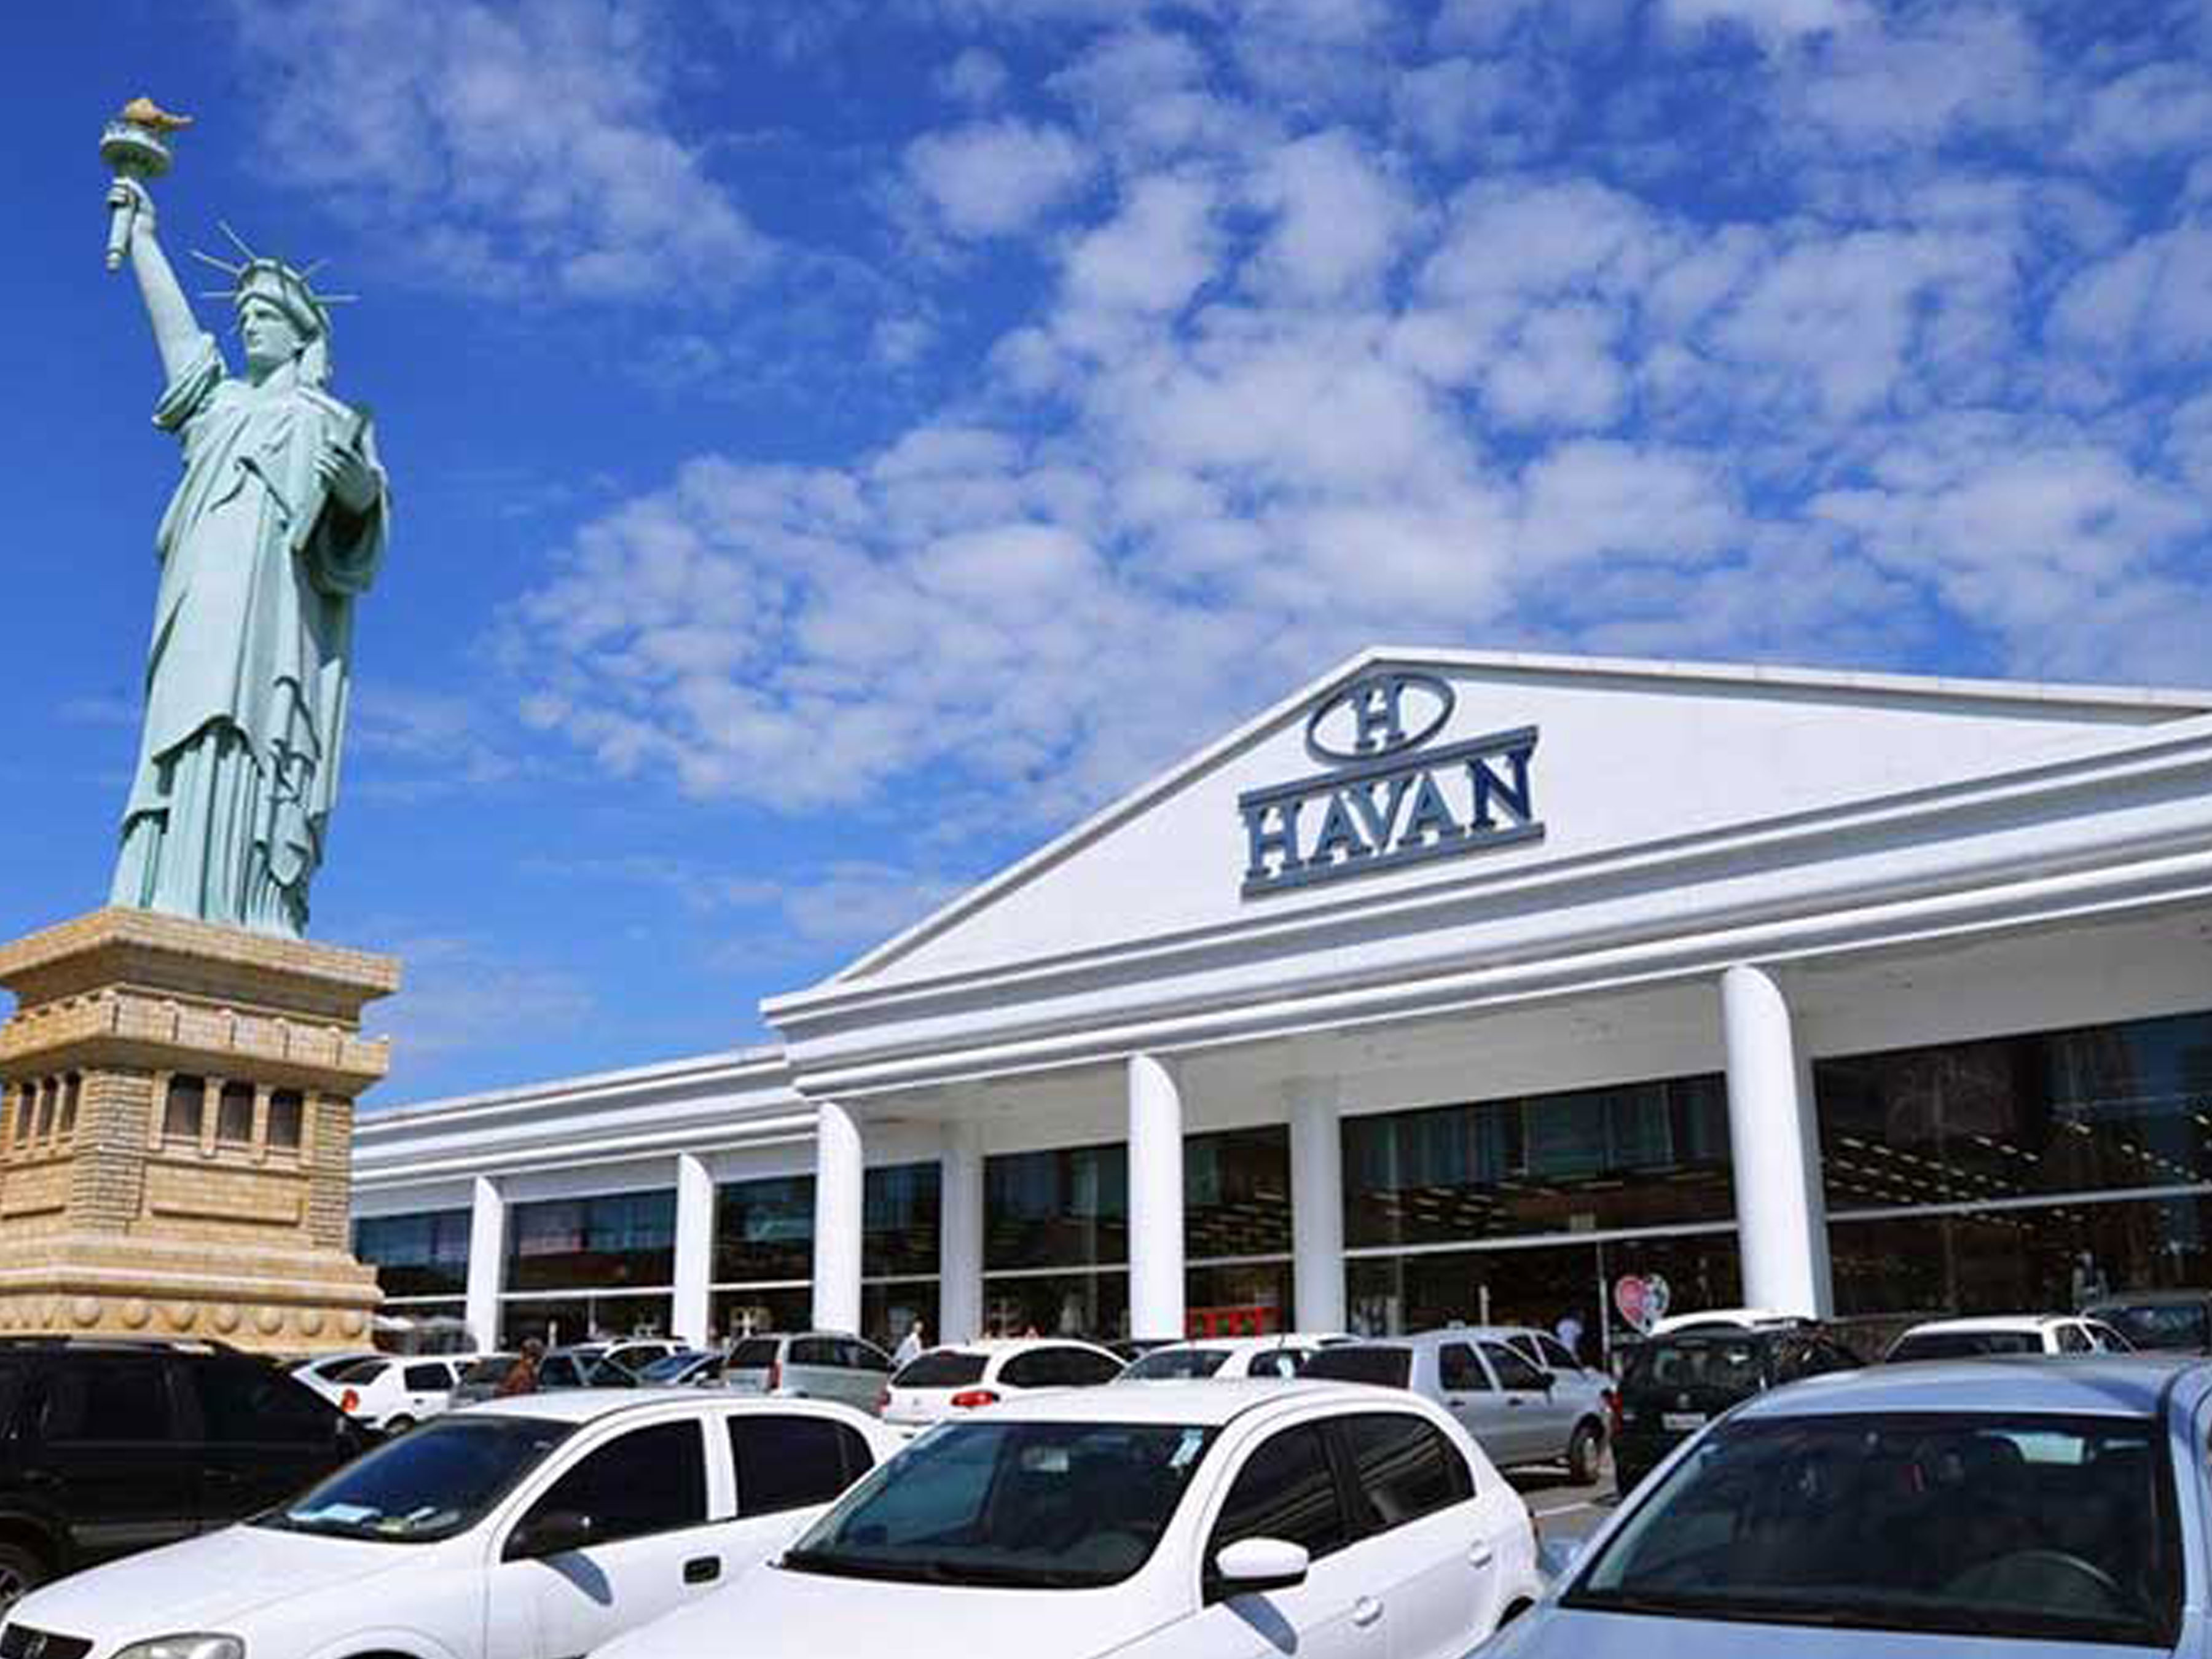 Havan store, video screenshot